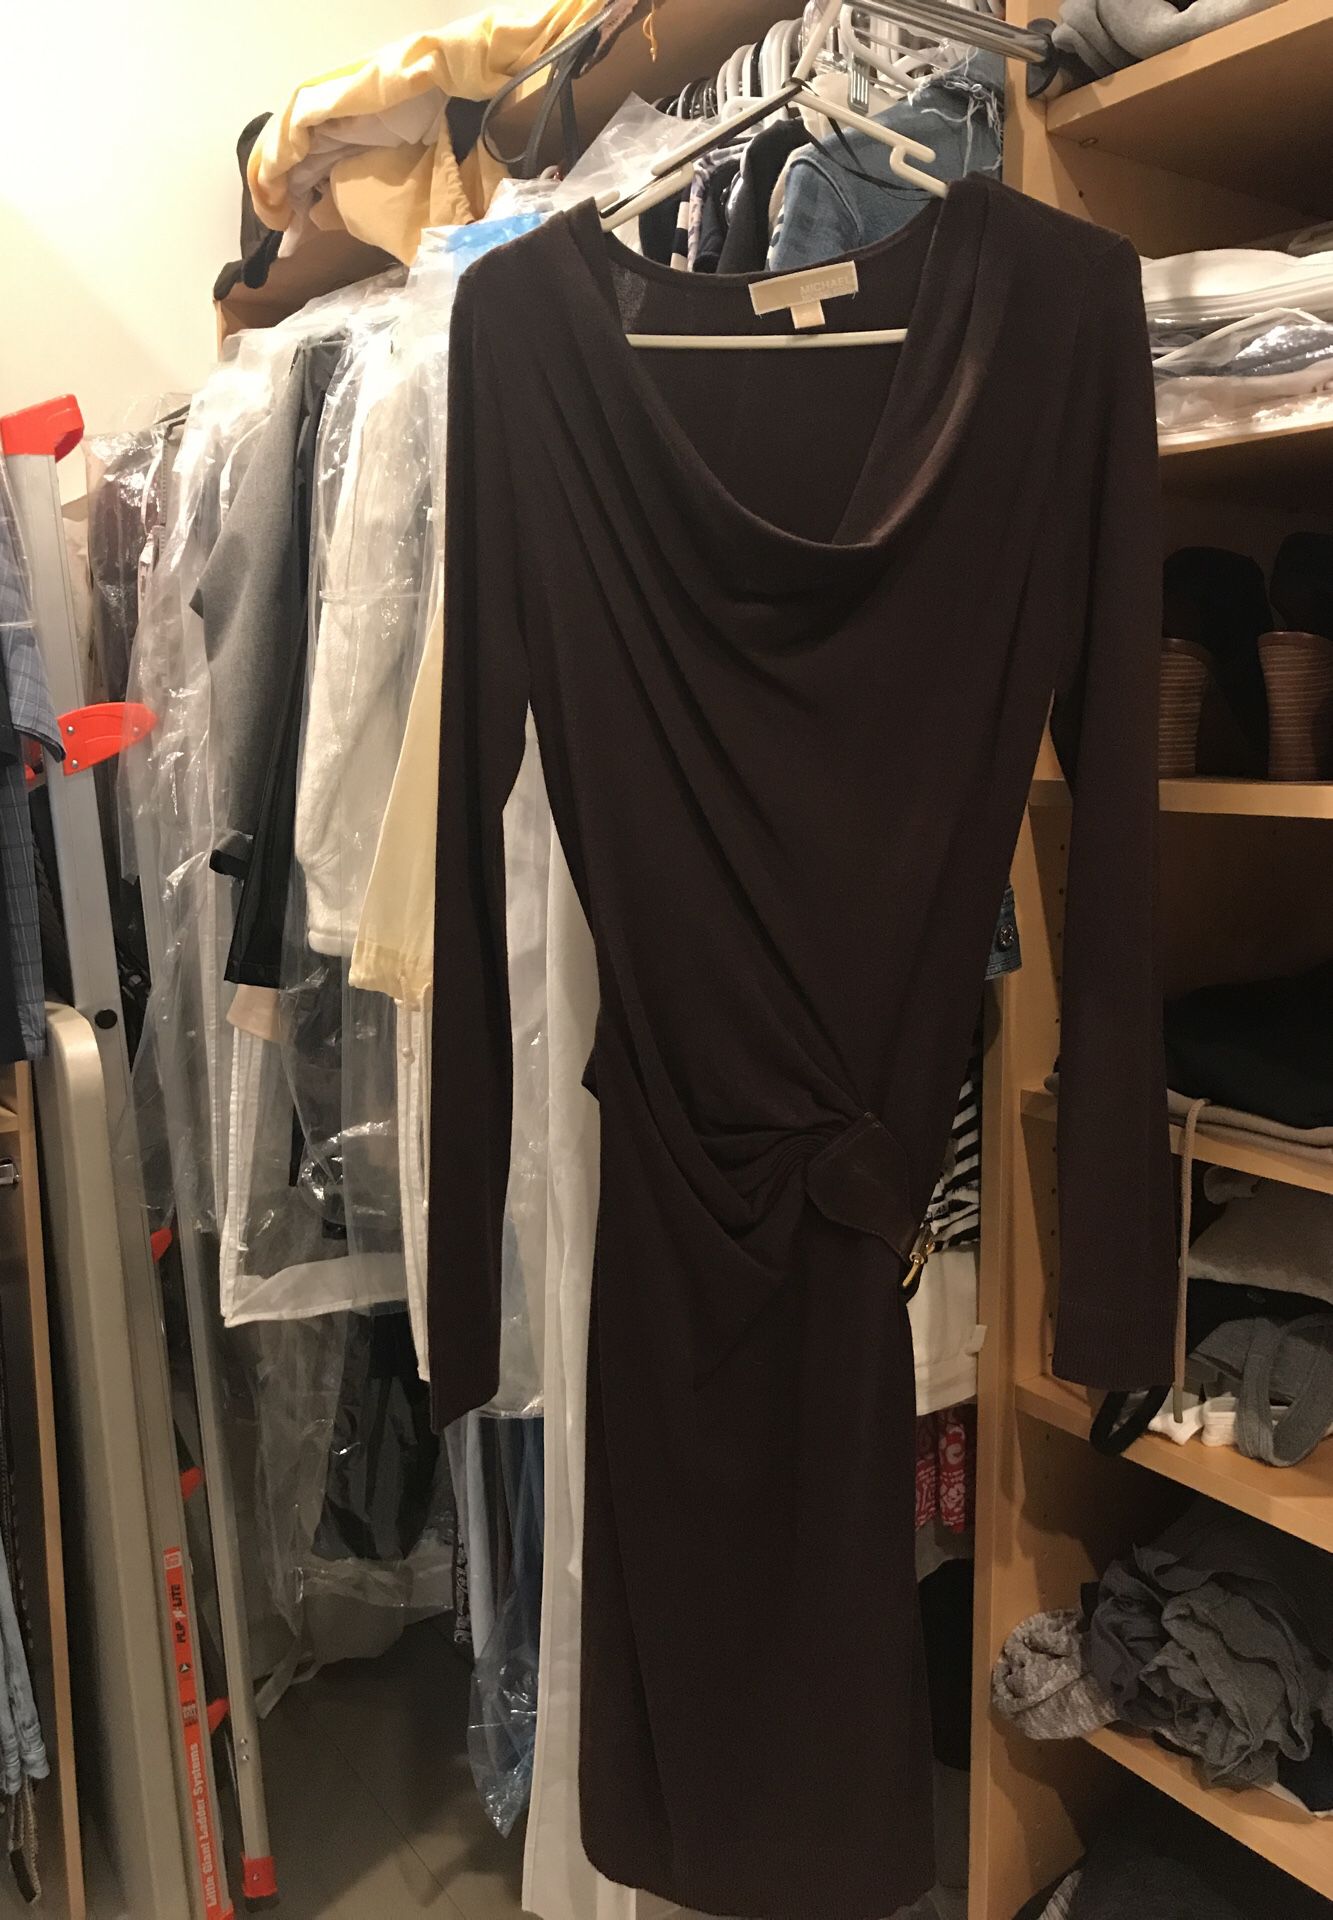 Michael Kors woven dress